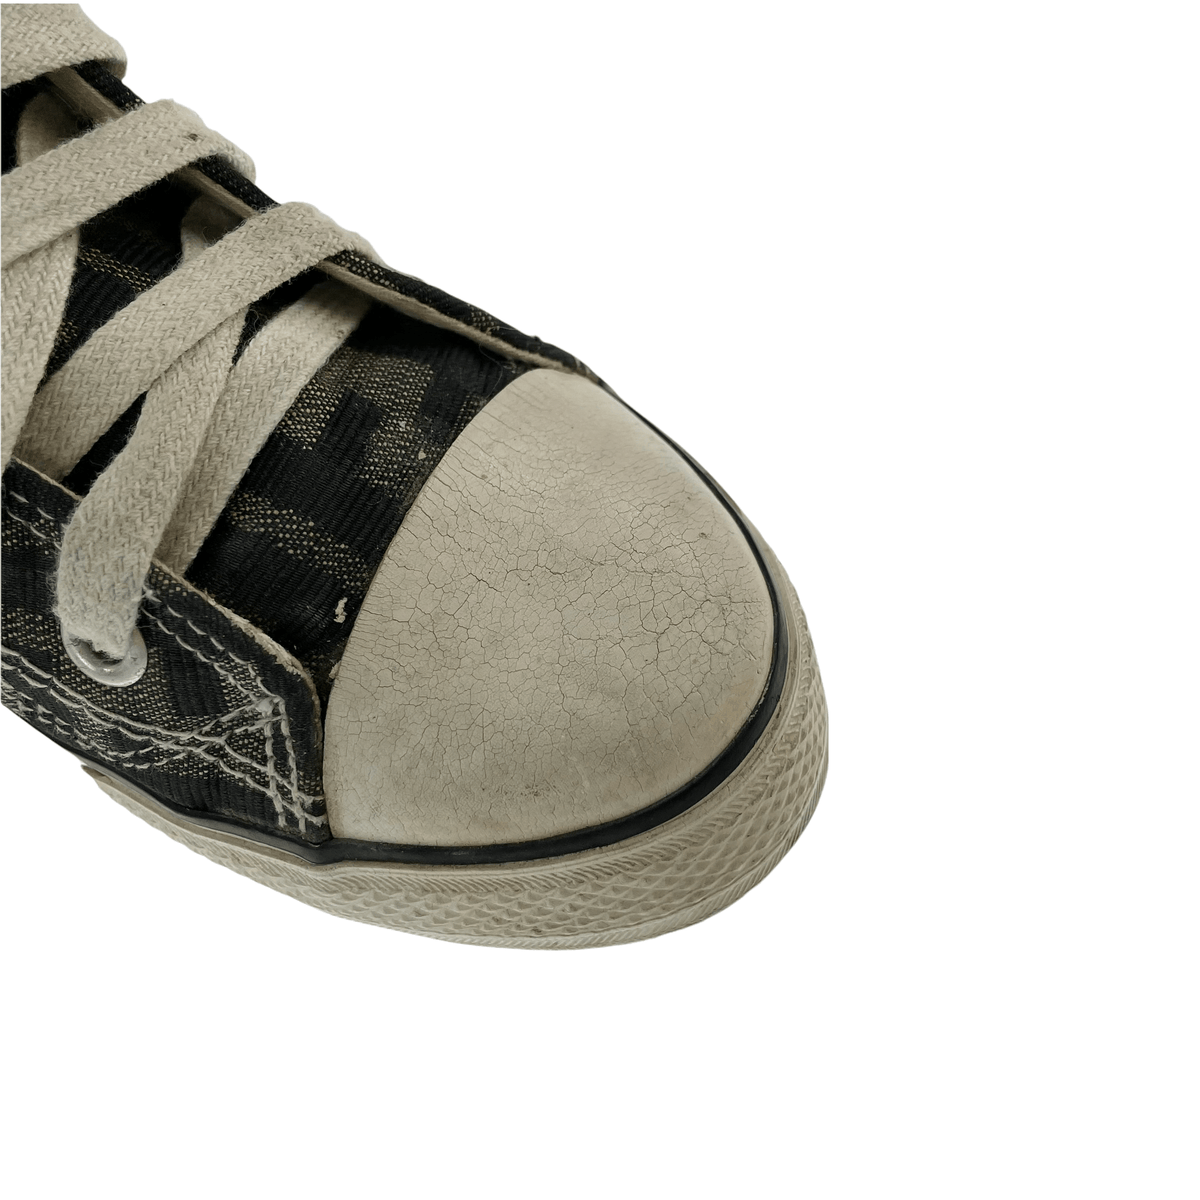 Vintage Fendi monogram trainers shoes size UK 3.5 - second wave vintage store